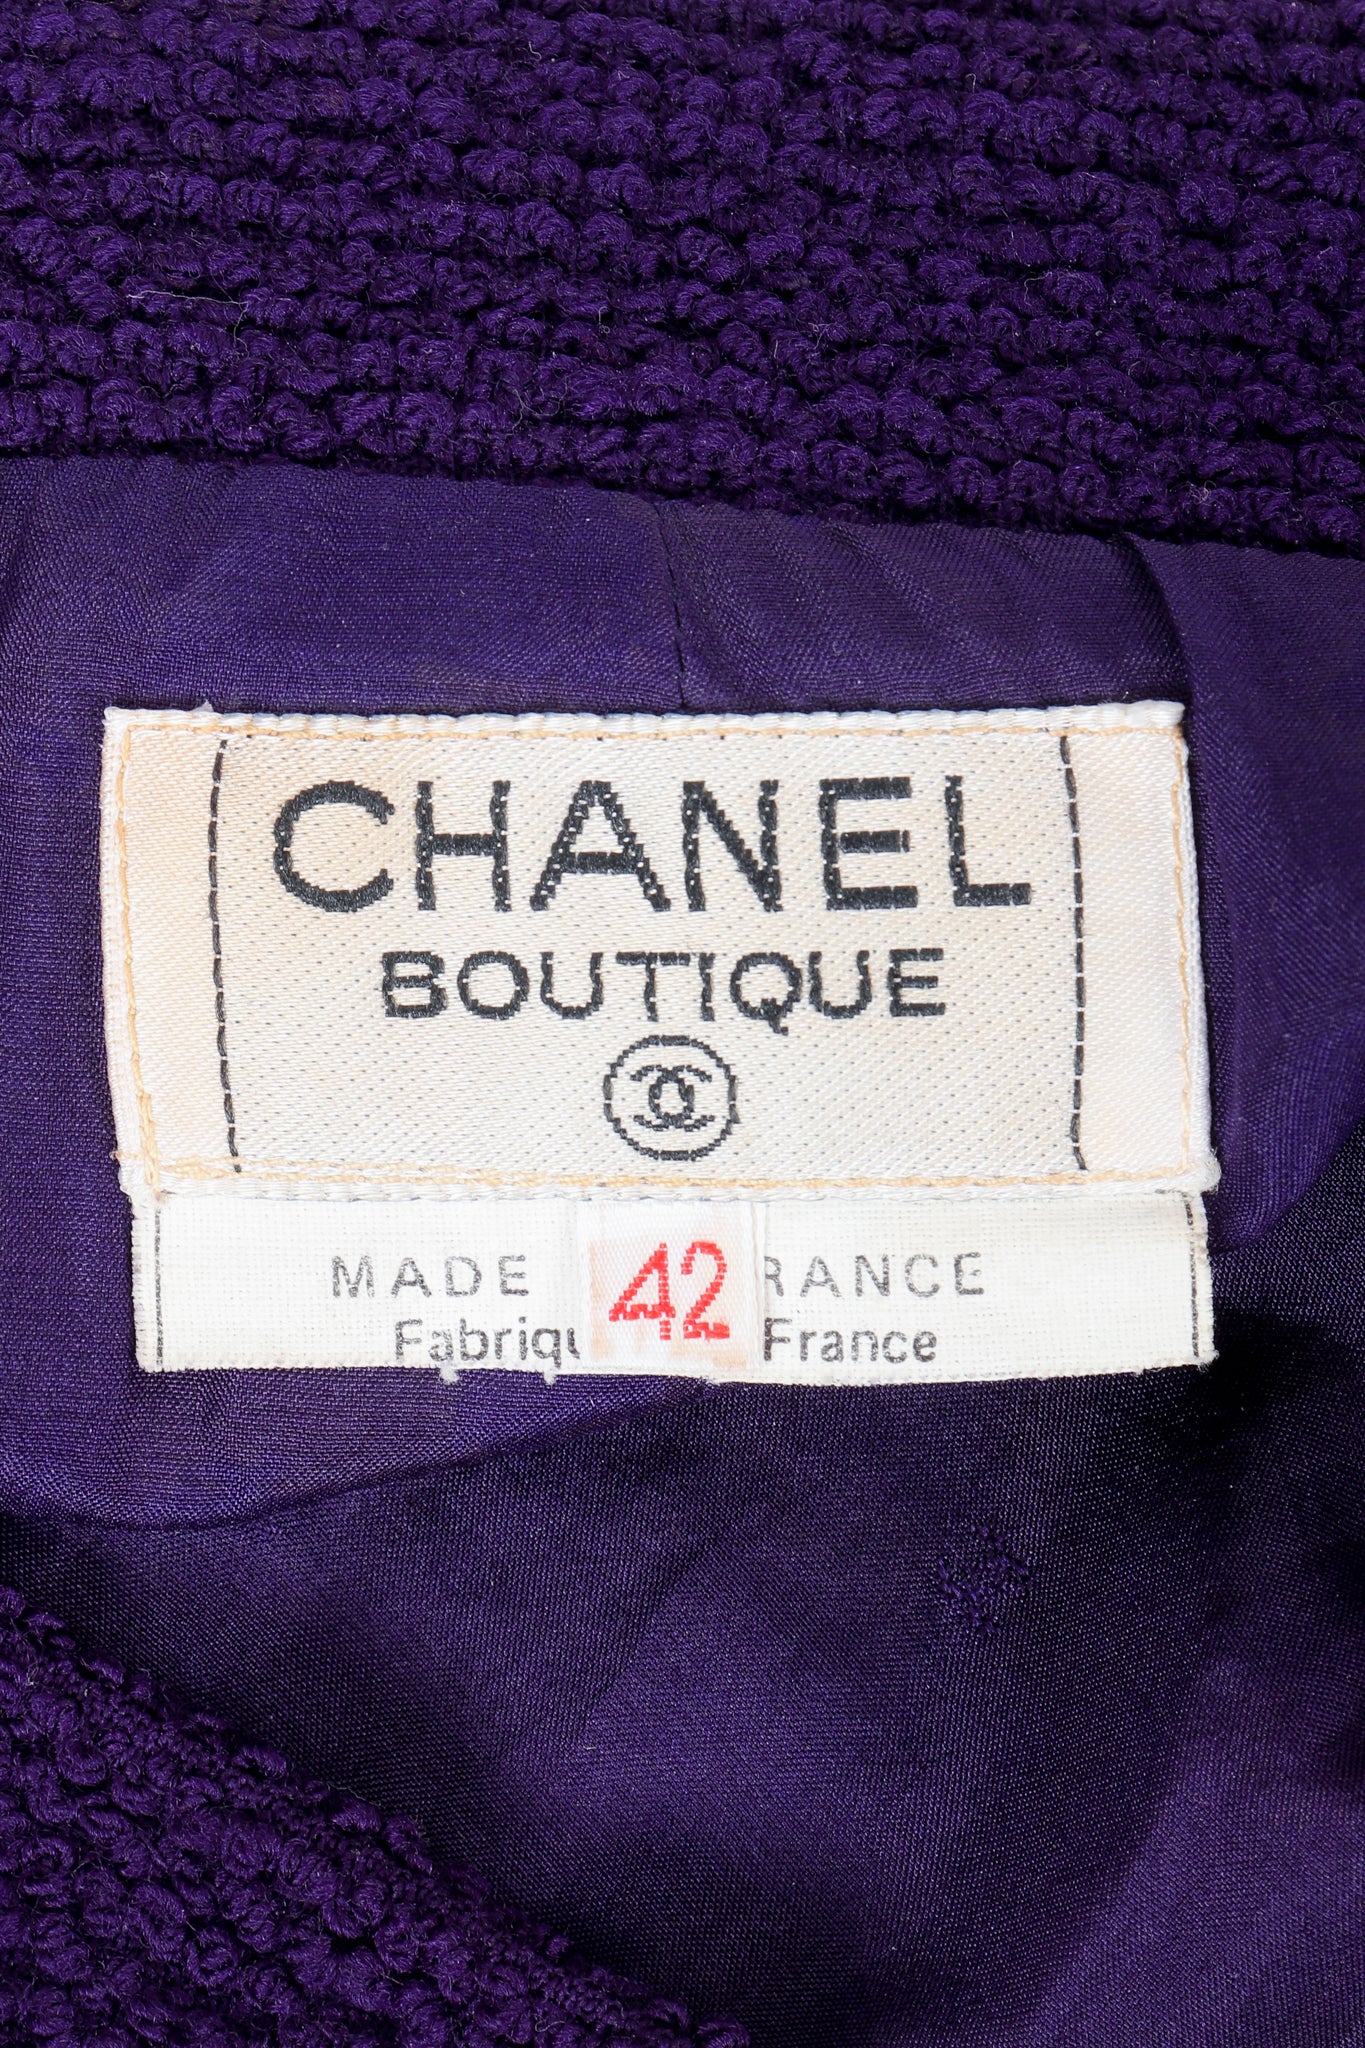 Vintage Chanel Bouclé Skirt Label on purple fabric